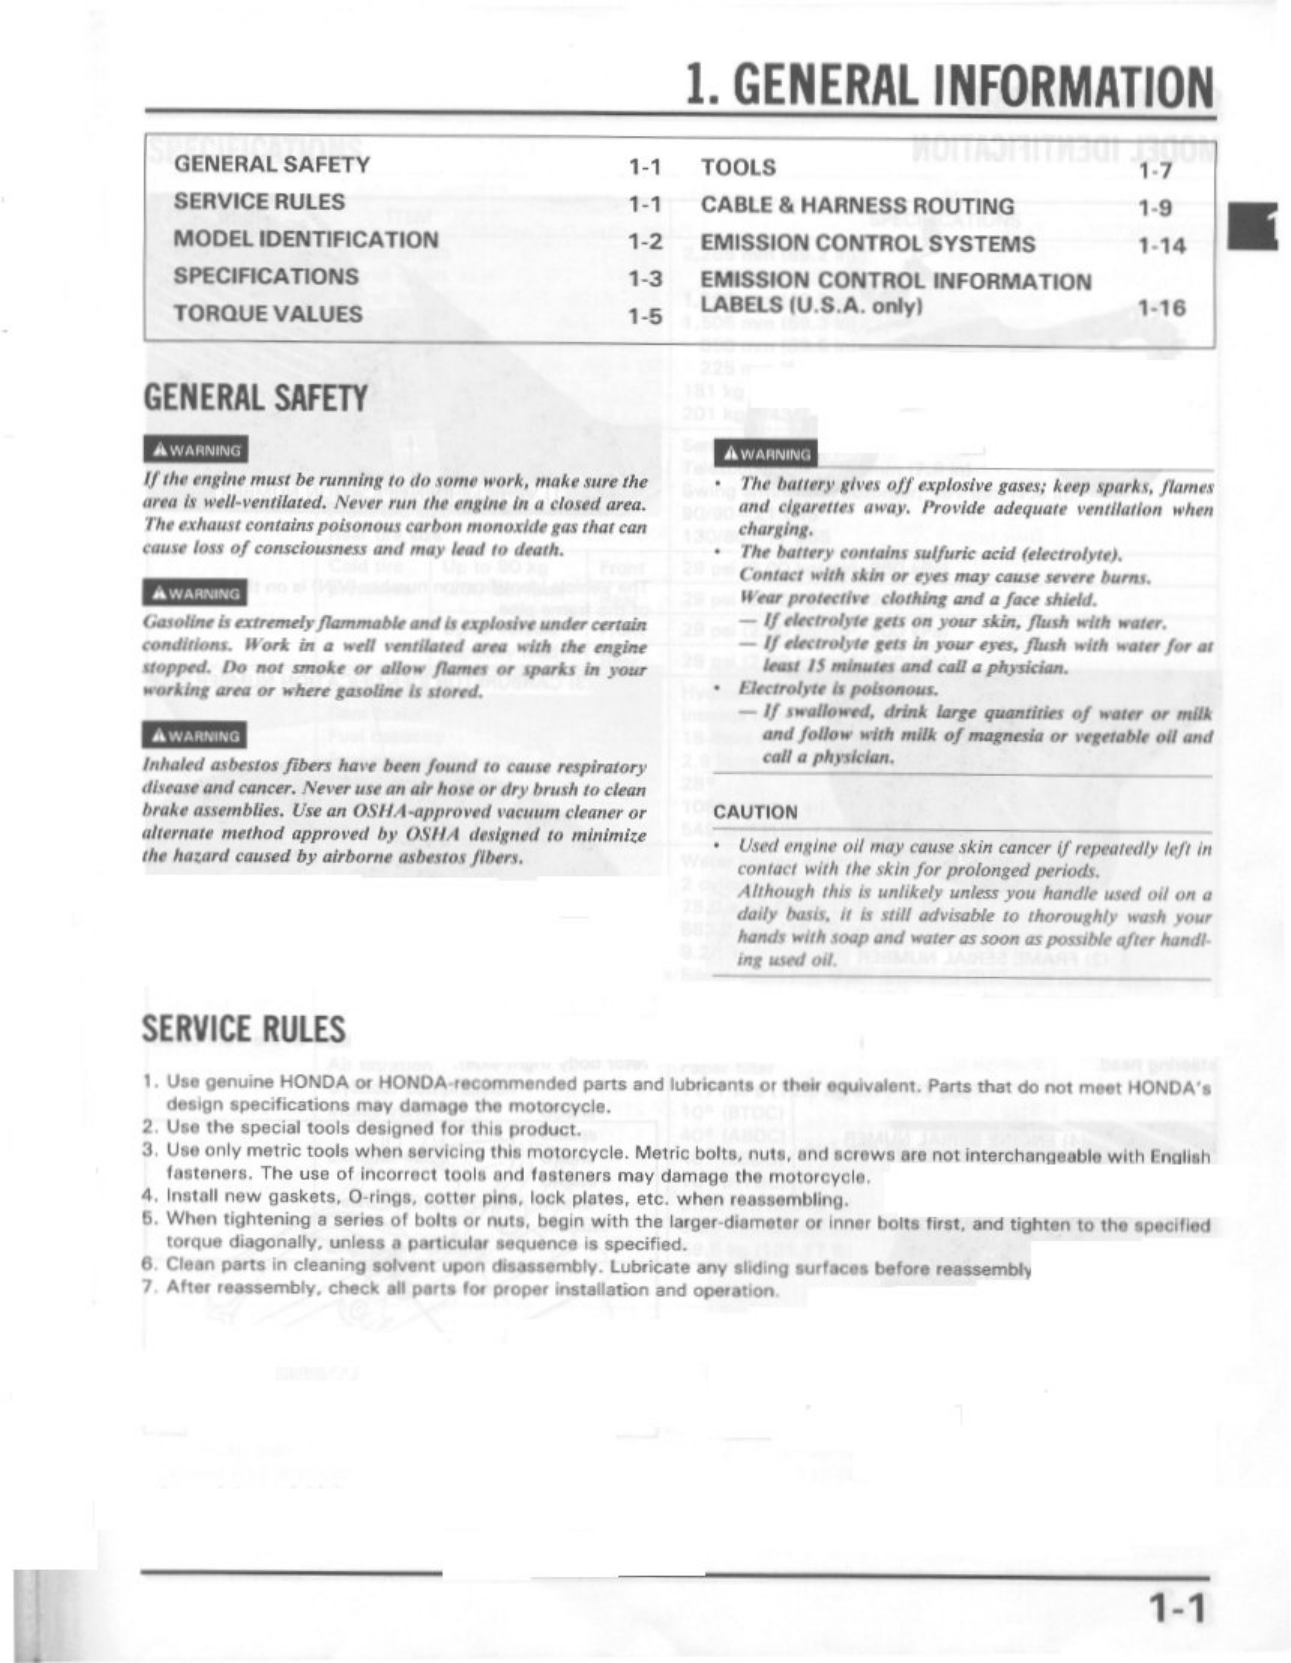 1987-2002 Honda XL650 Transalp repair and service manual Preview image 2